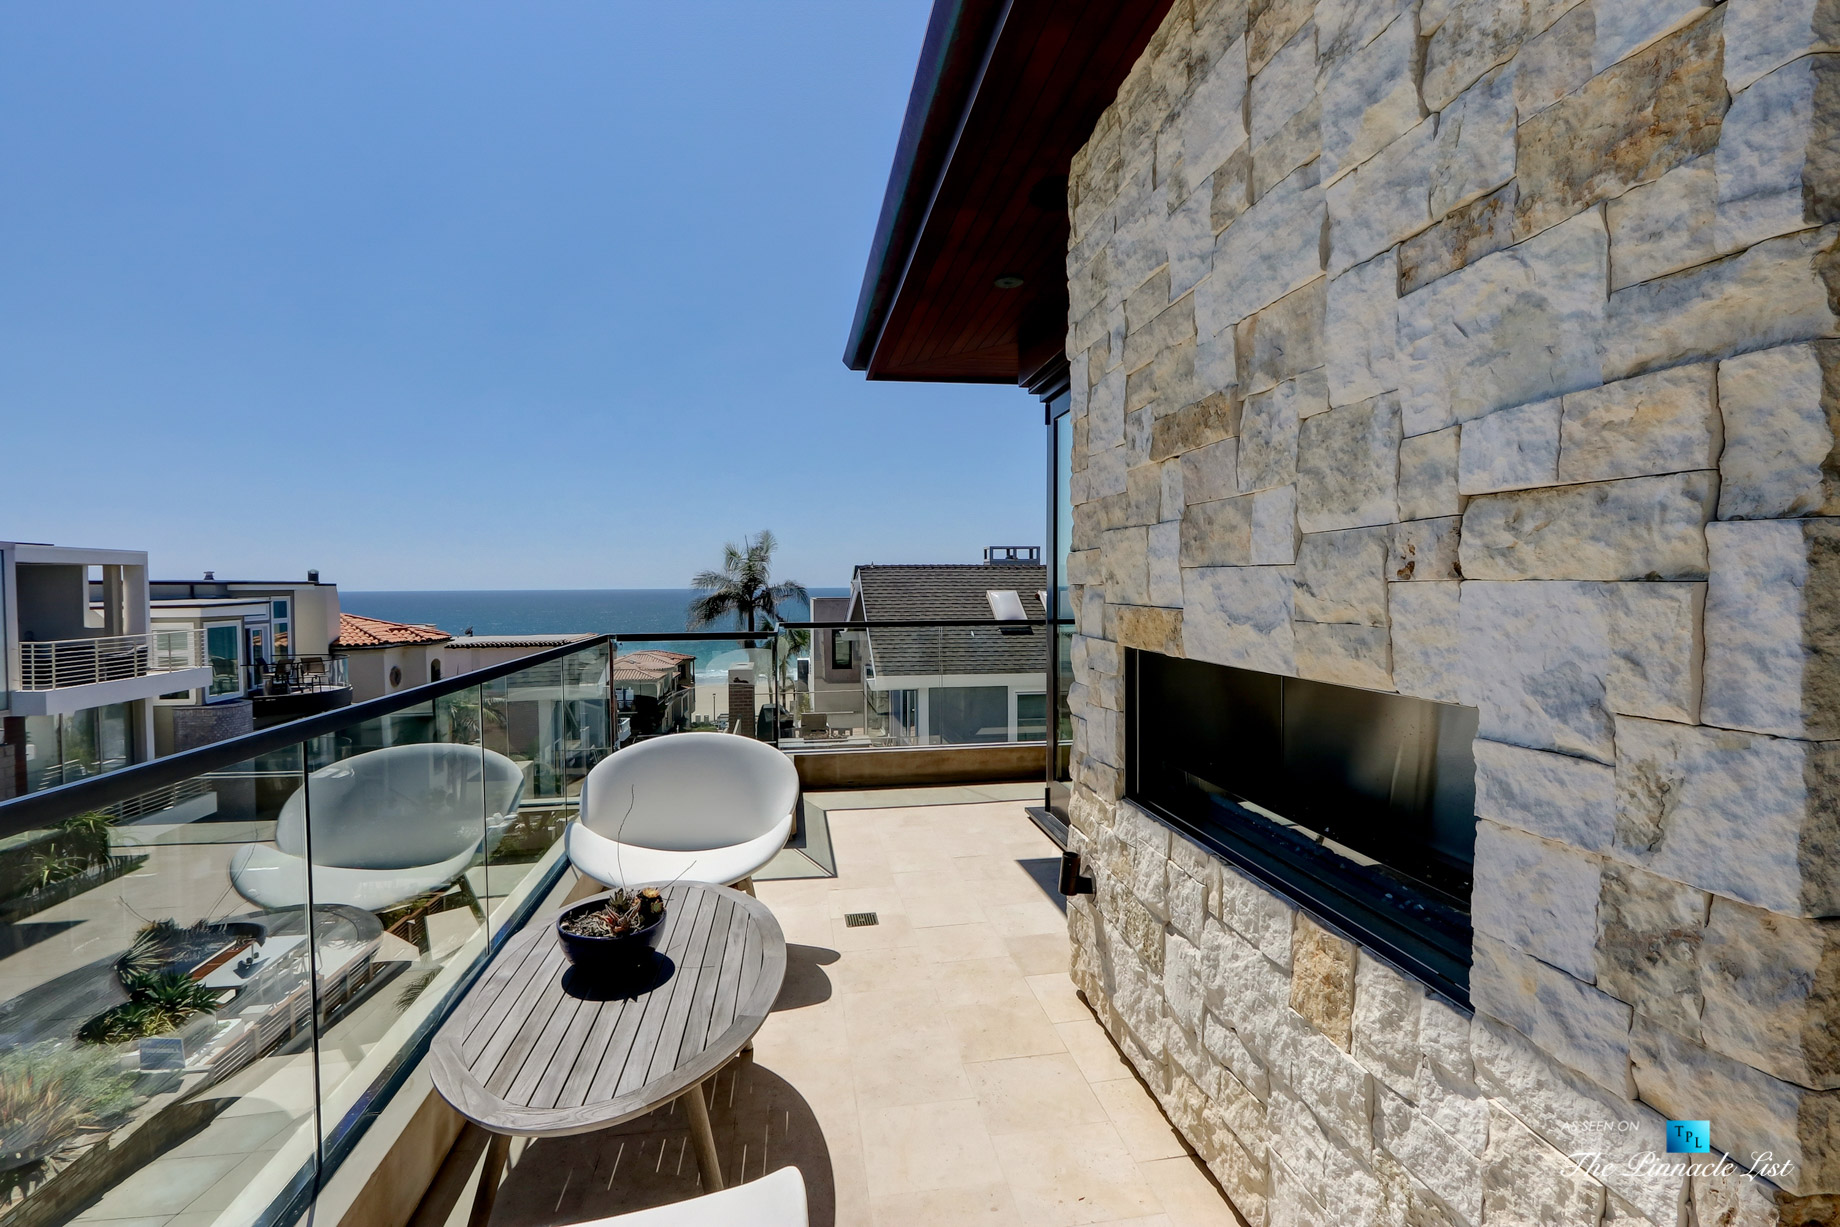 205 20th Street, Manhattan Beach, CA, USA - Top Deck - Luxury Real Estate - Ocean View Home